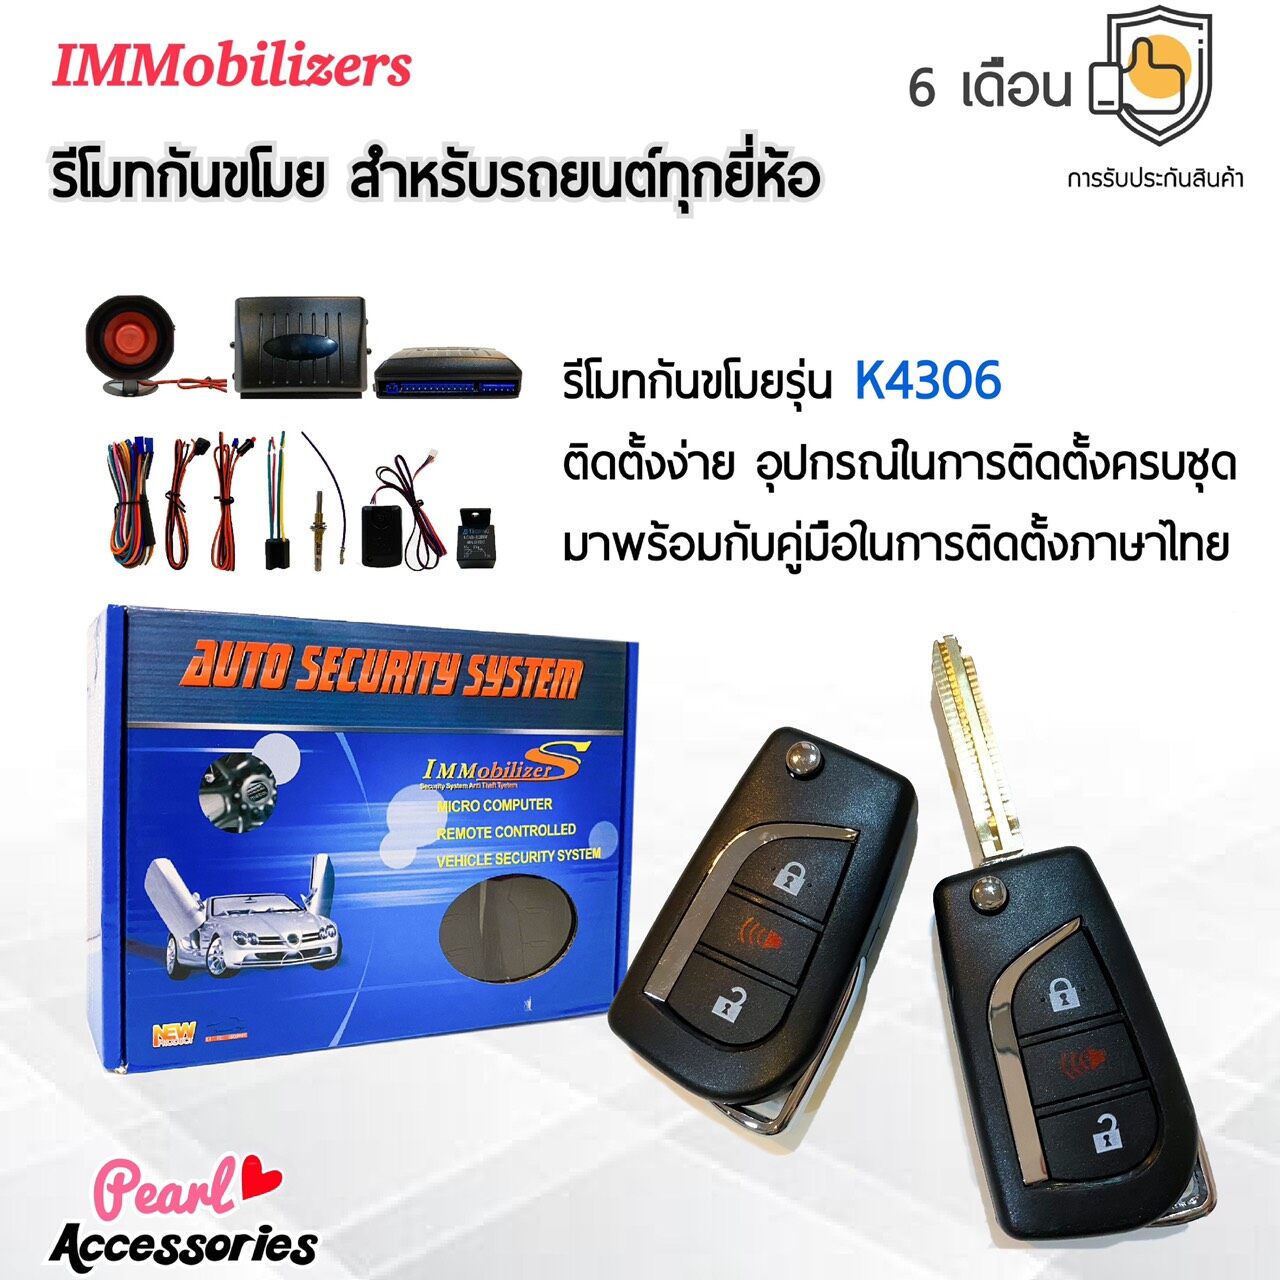 Immobilizers รีโมทกันขโมย K4306 กุญแจทรง Toyota สำหรับรถยนต์ทุกยี่ห้อ อุปกรณ์ในการติดตั้งครบชุด (คู่มือในการติดตั้งภาษาไทย) Auto security system